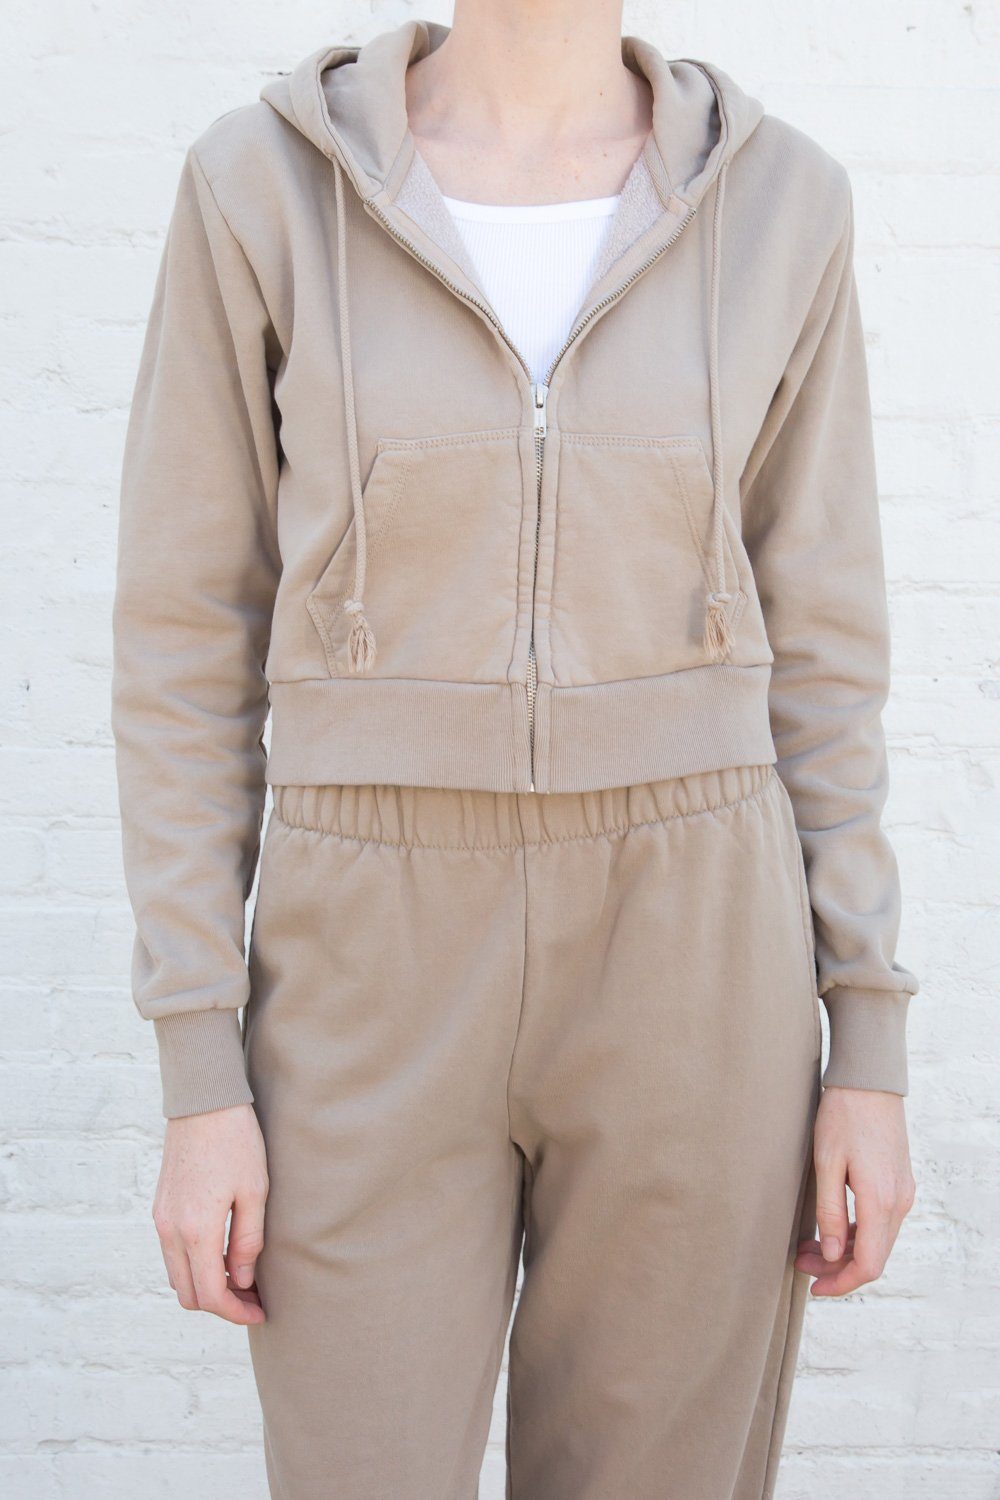 Brandy Melville Crystal Hoodie Sweatshirt Jacket One Size (XS/Sm) Tan Crop  Zip